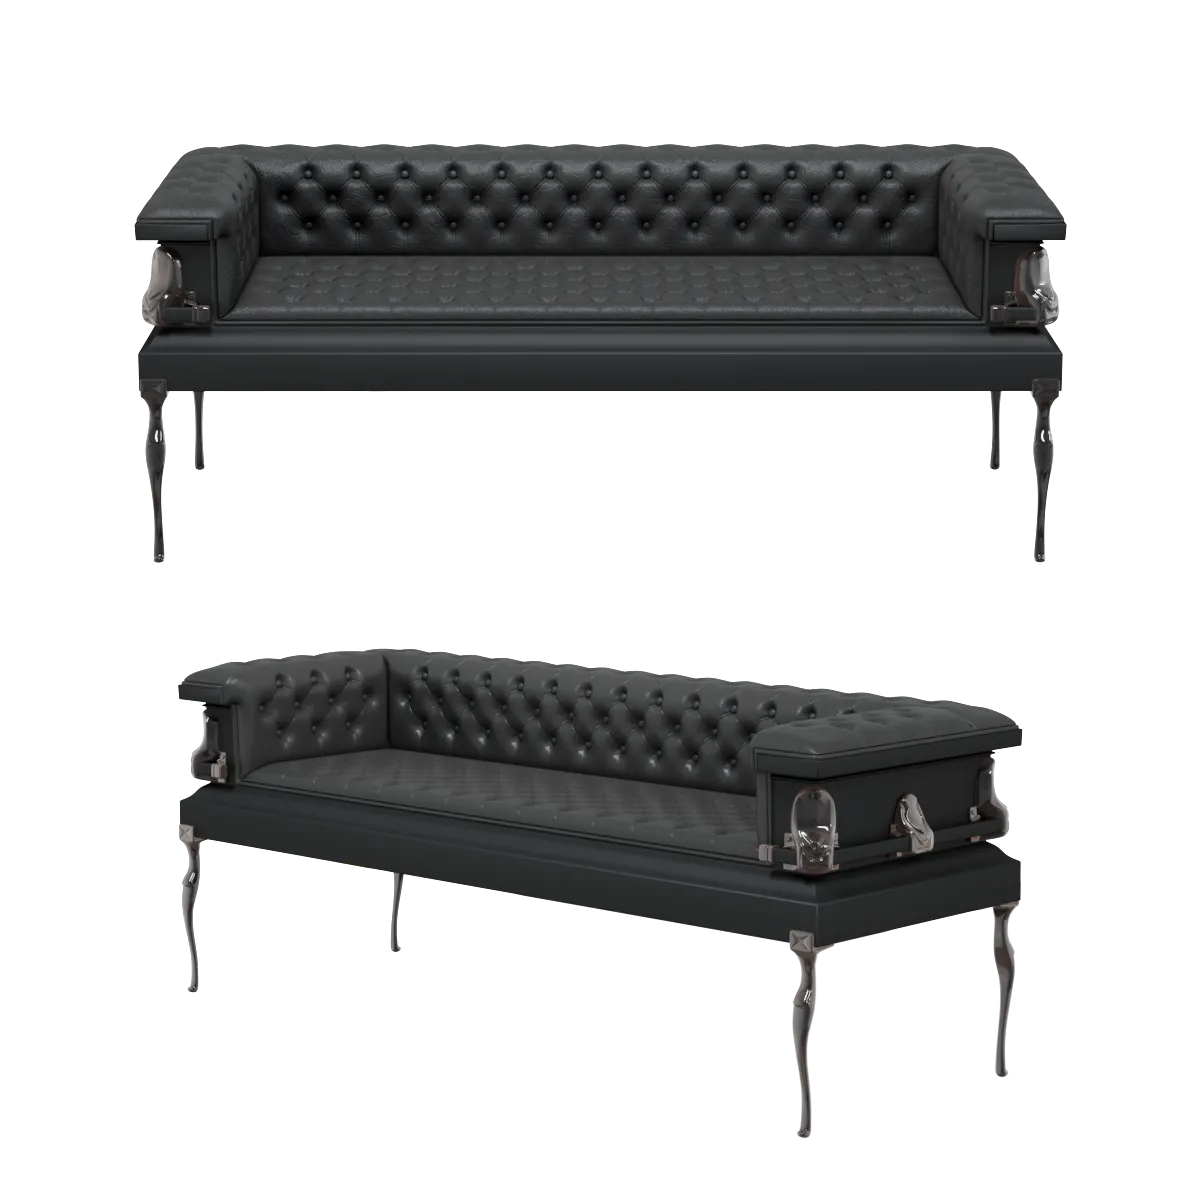 SOFA – Classic leather sofa